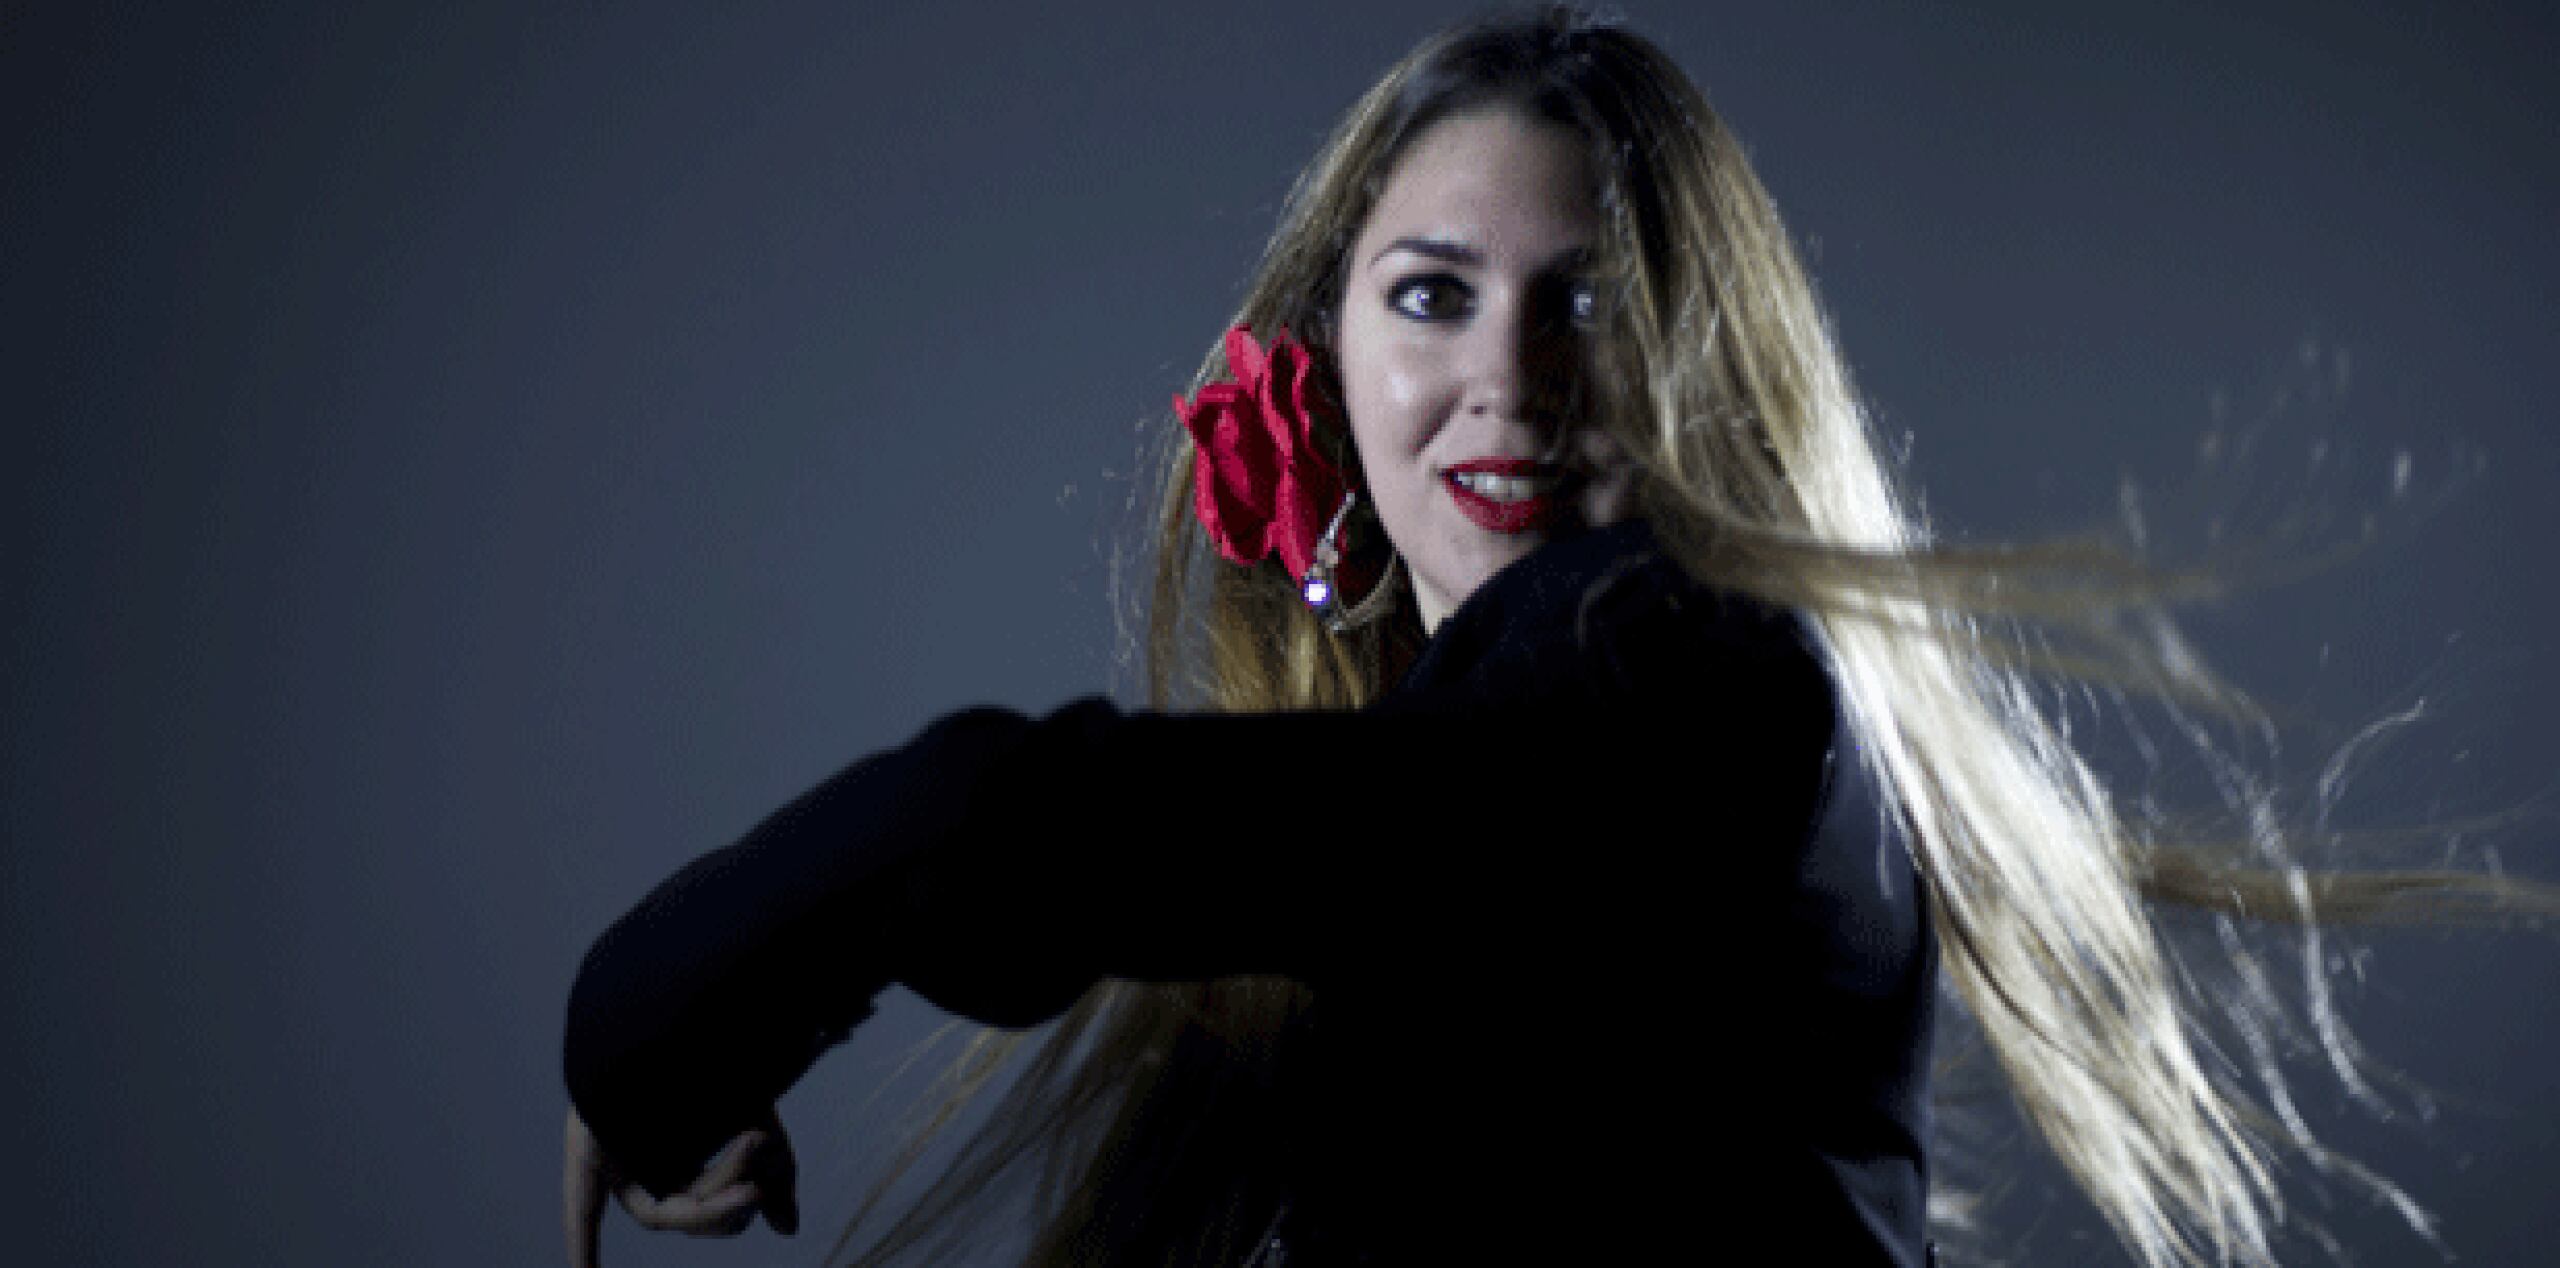 En la segunda parte del espectáculo Ana del Rocío interpretará temas del repertorio popular, como “La Pared”, en versión flamenco. Además, presentará temas originales inéditos. (xavier.araujo@gfrmedia.com)